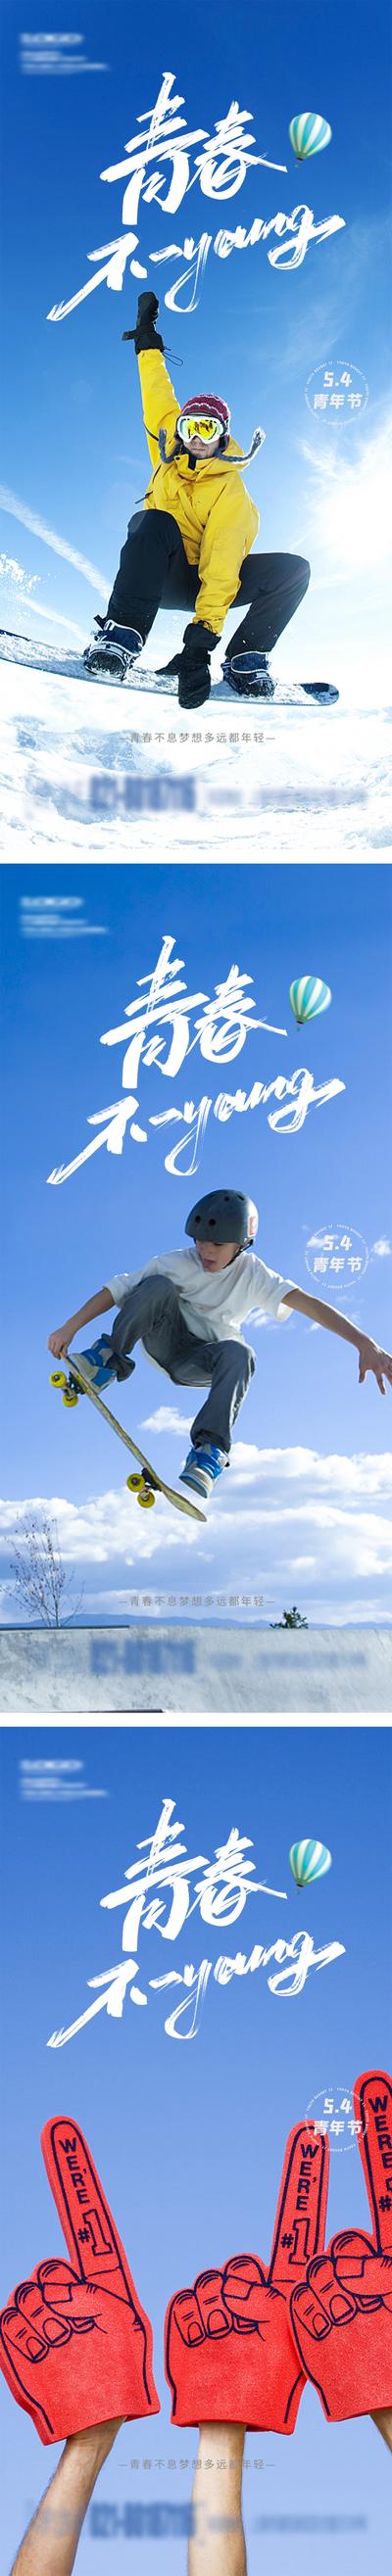 南门网 海报 房地产 公历节日 青年节 五四 运动 青春 滑雪 滑板 系列